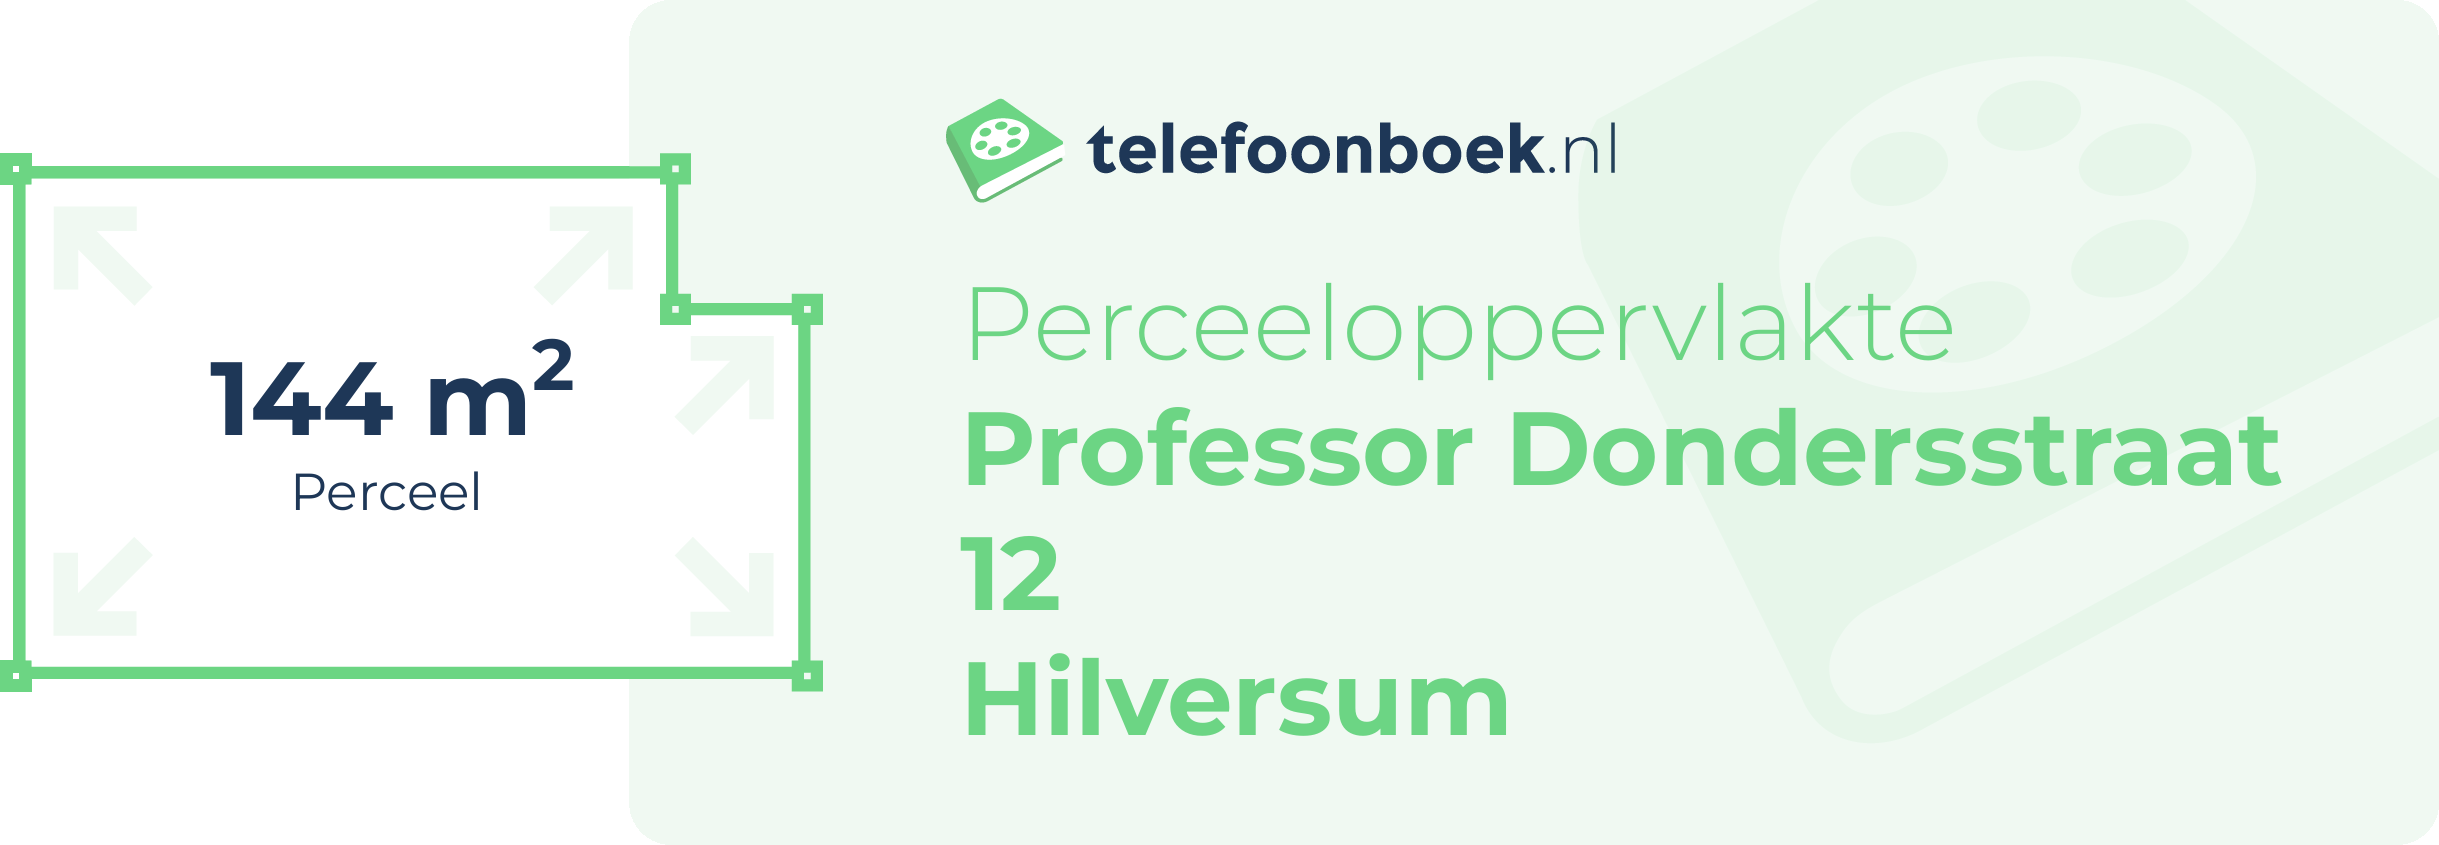 Perceeloppervlakte Professor Dondersstraat 12 Hilversum